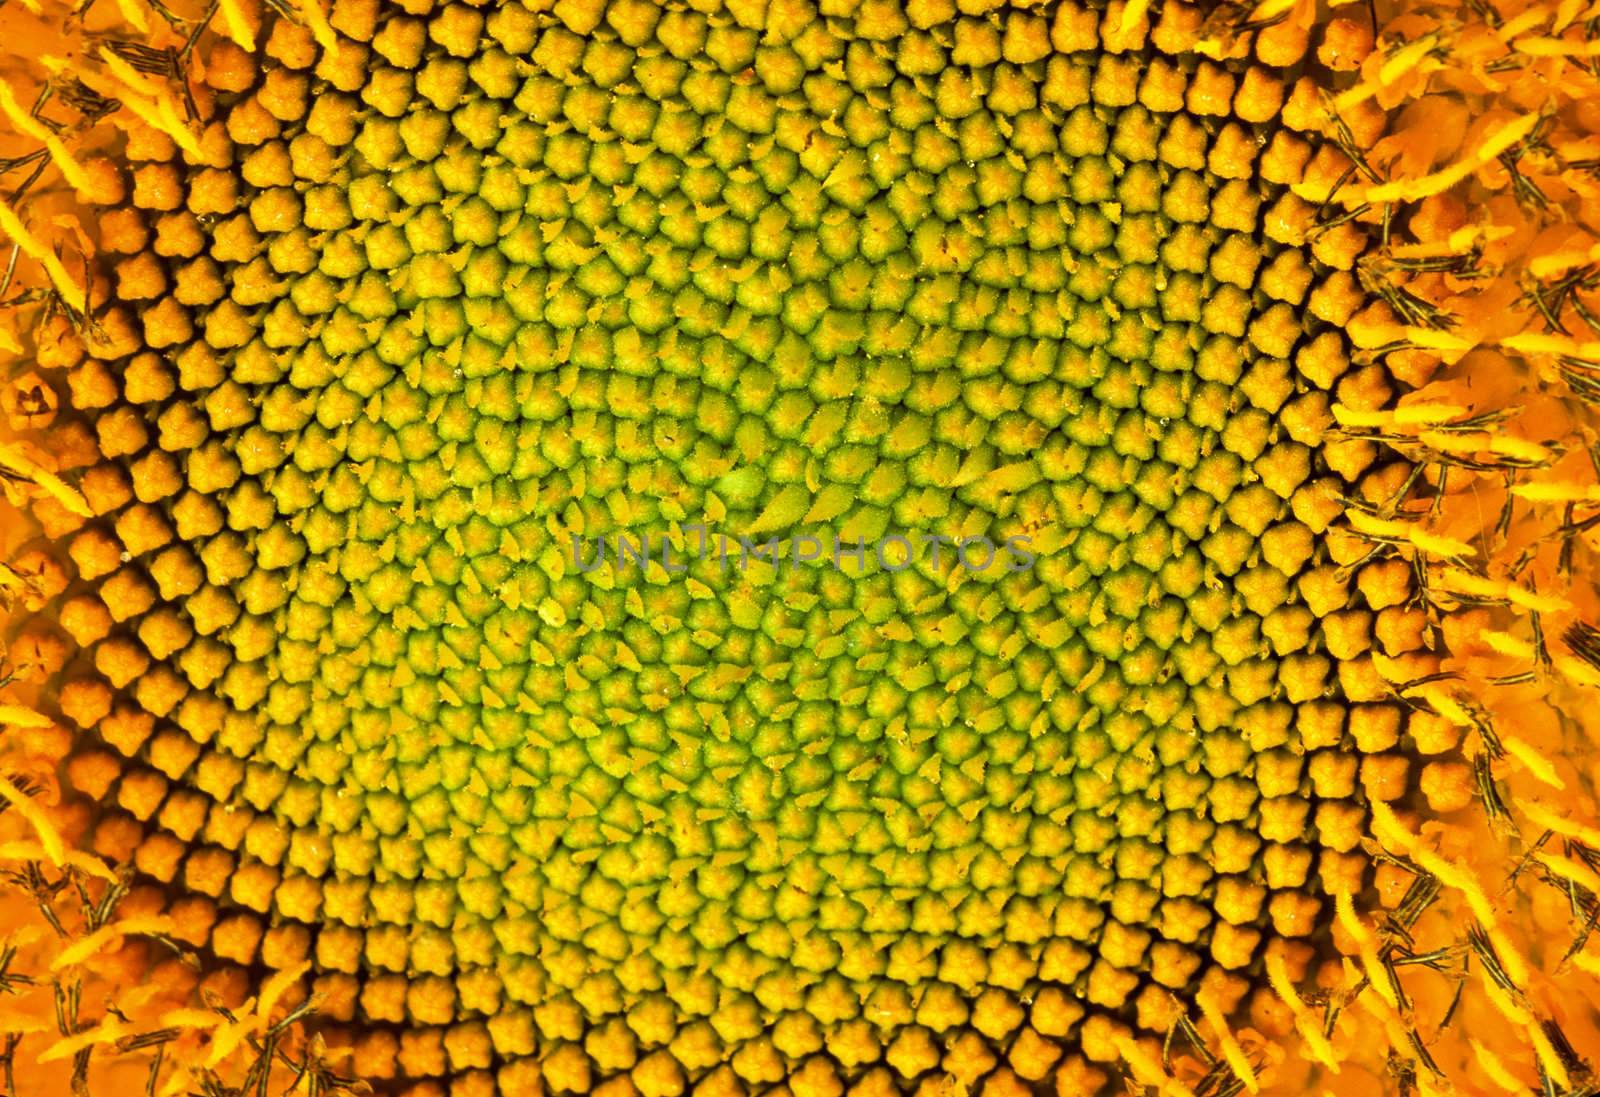 Sunflower Pod by Geoarts